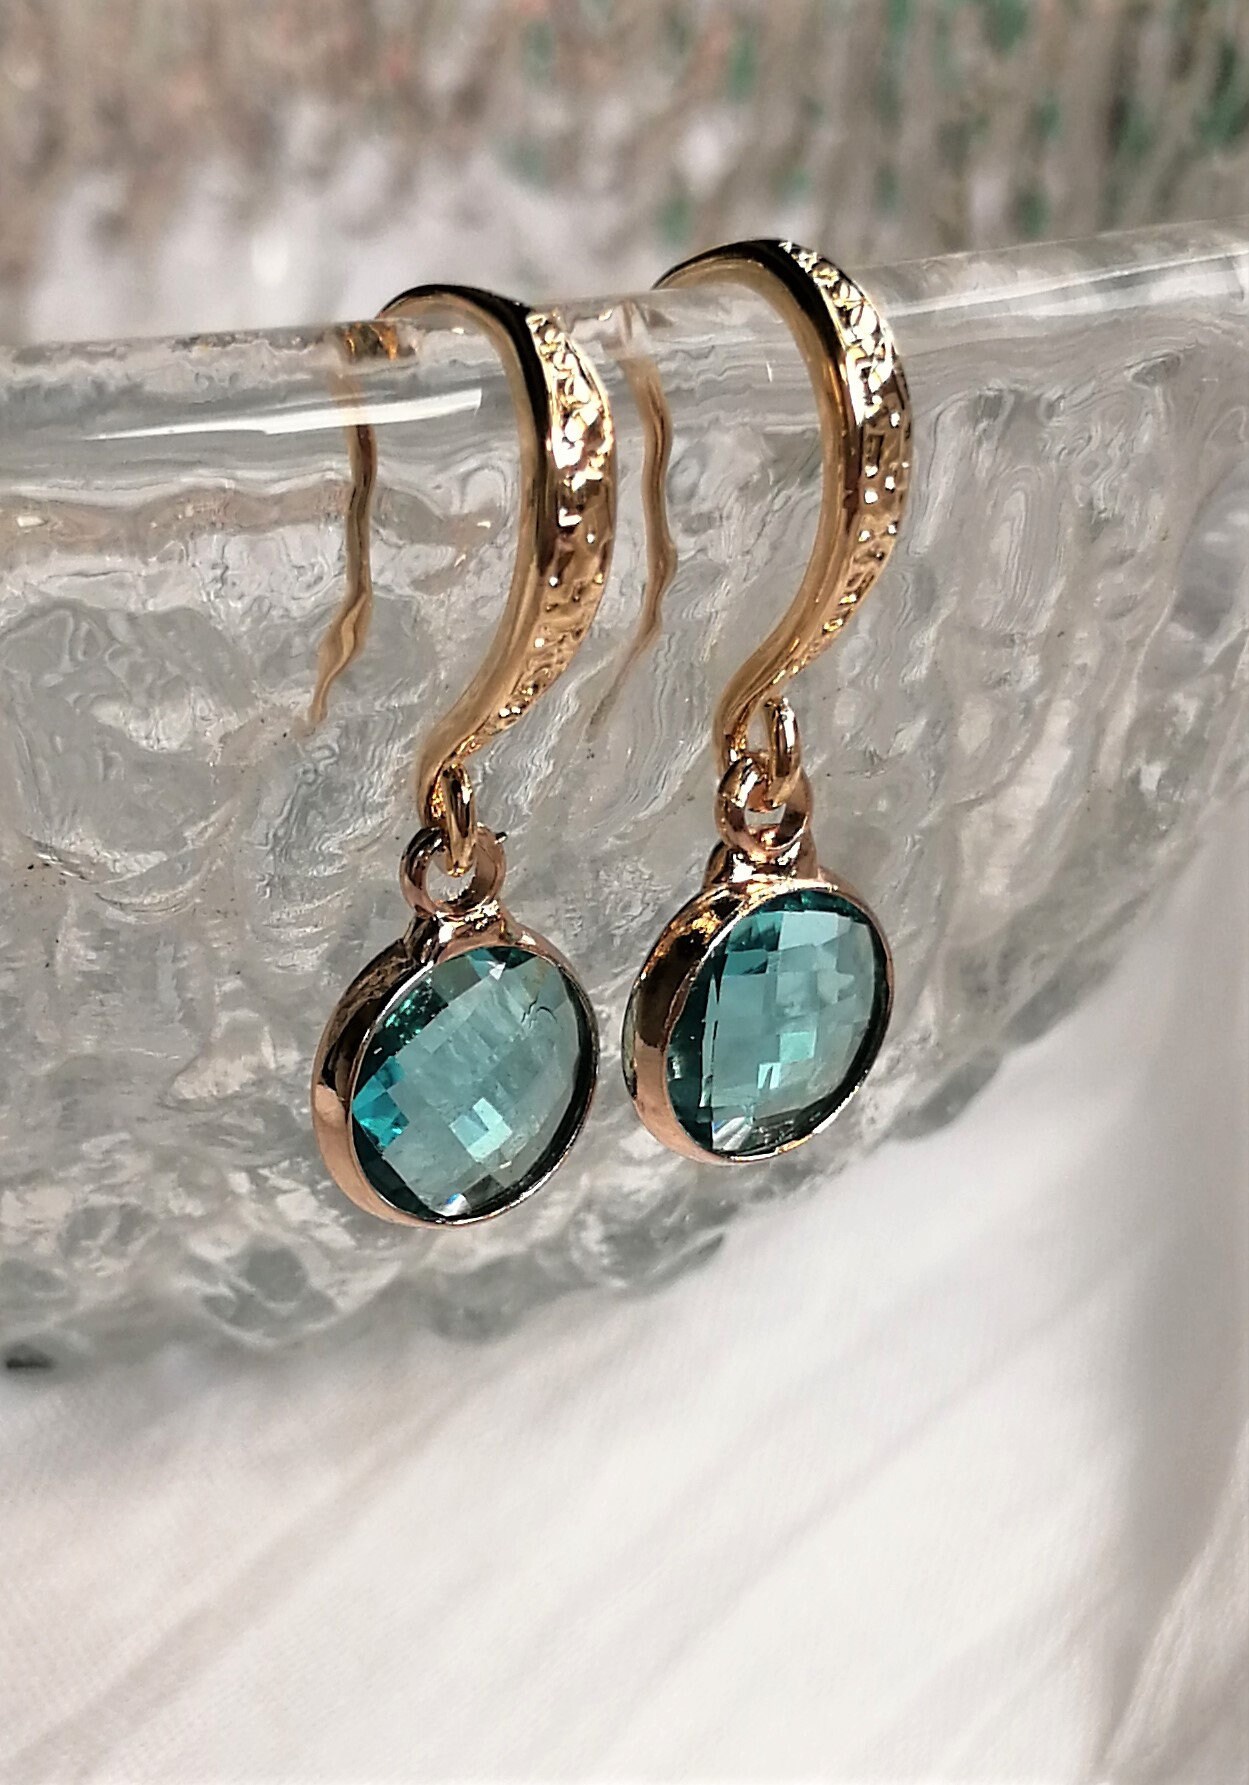 Turquoise earrings Blue crystal earrings Gold earrings | Etsy